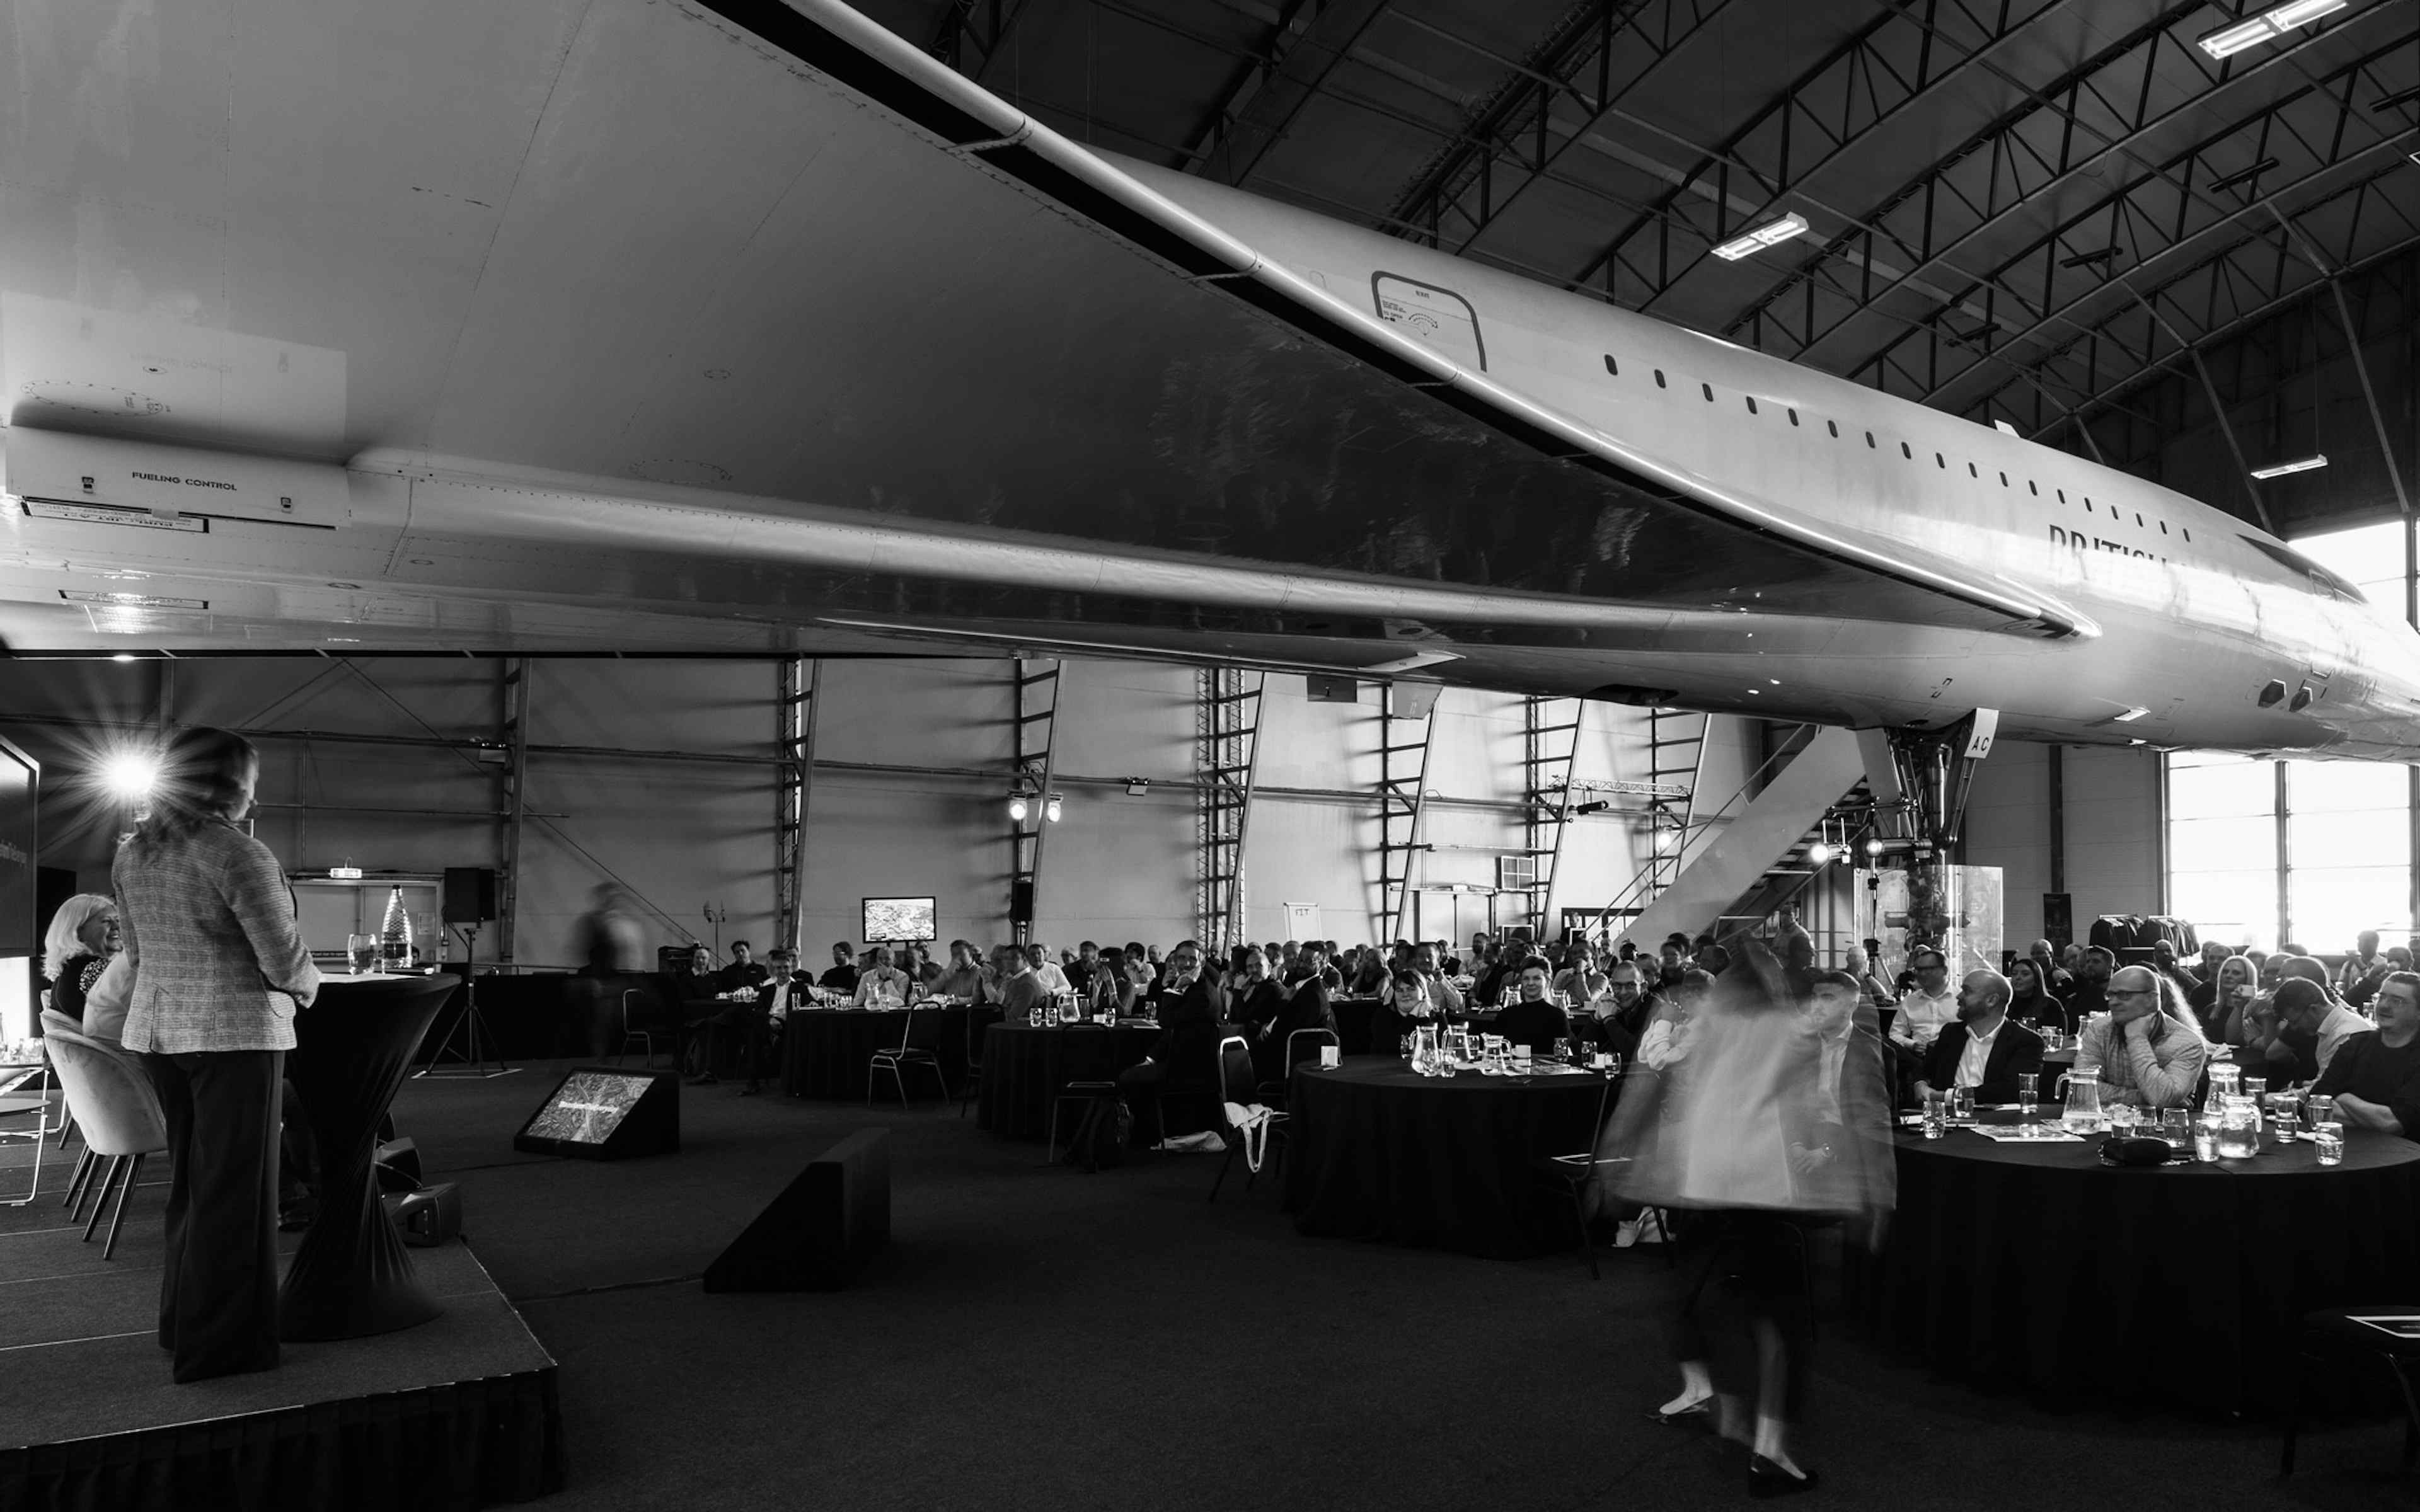 Concorde Hangar - image